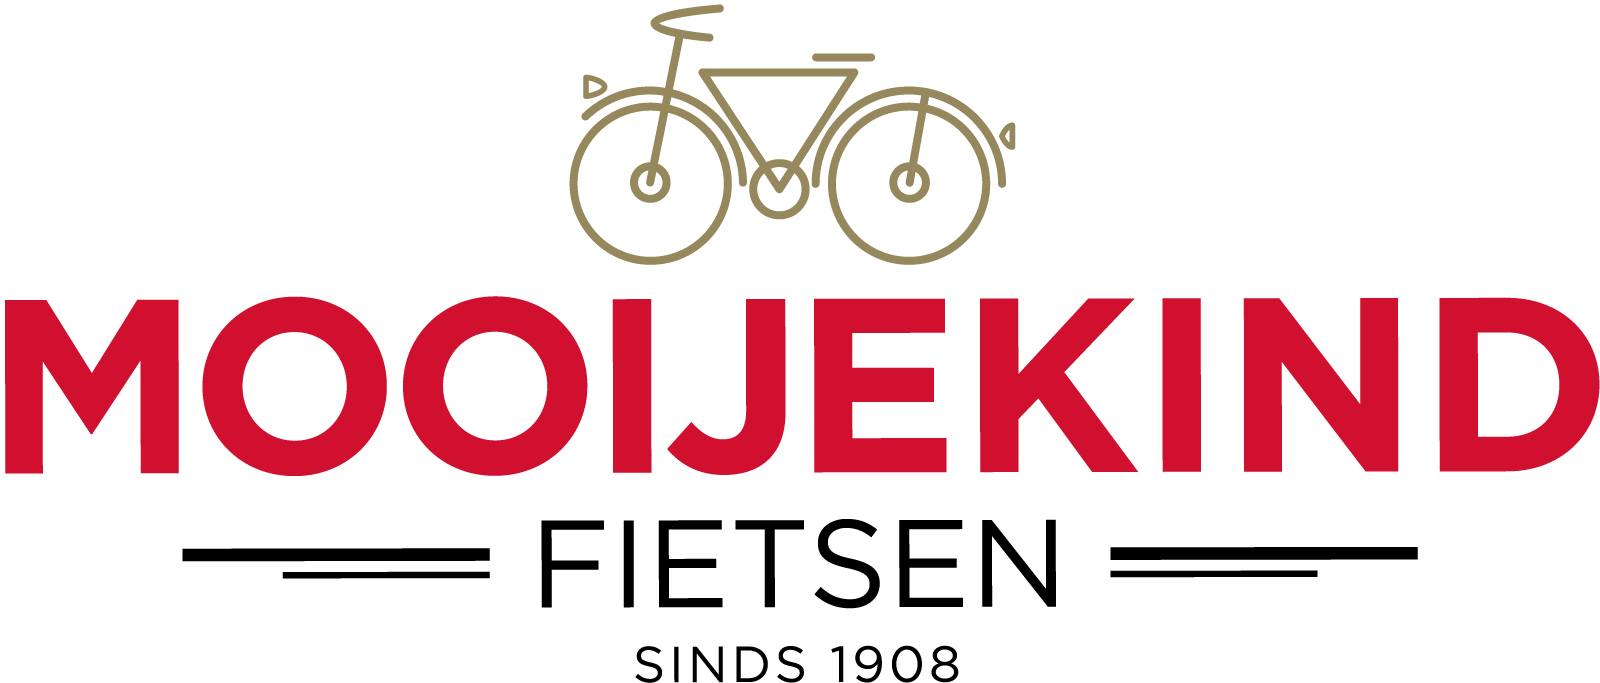 mooijekind_fietsen_logo_fc